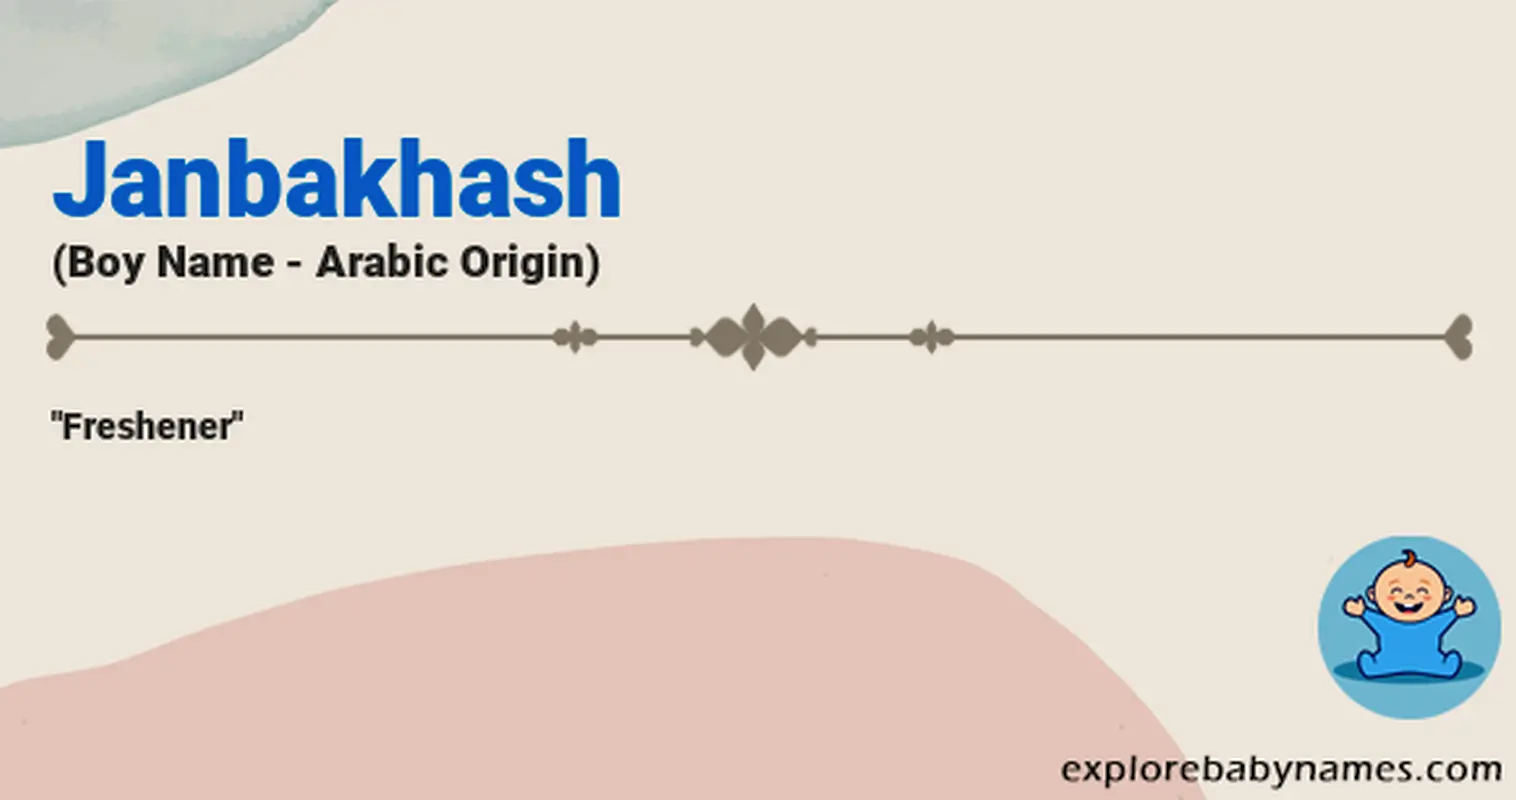 Meaning of Janbakhash